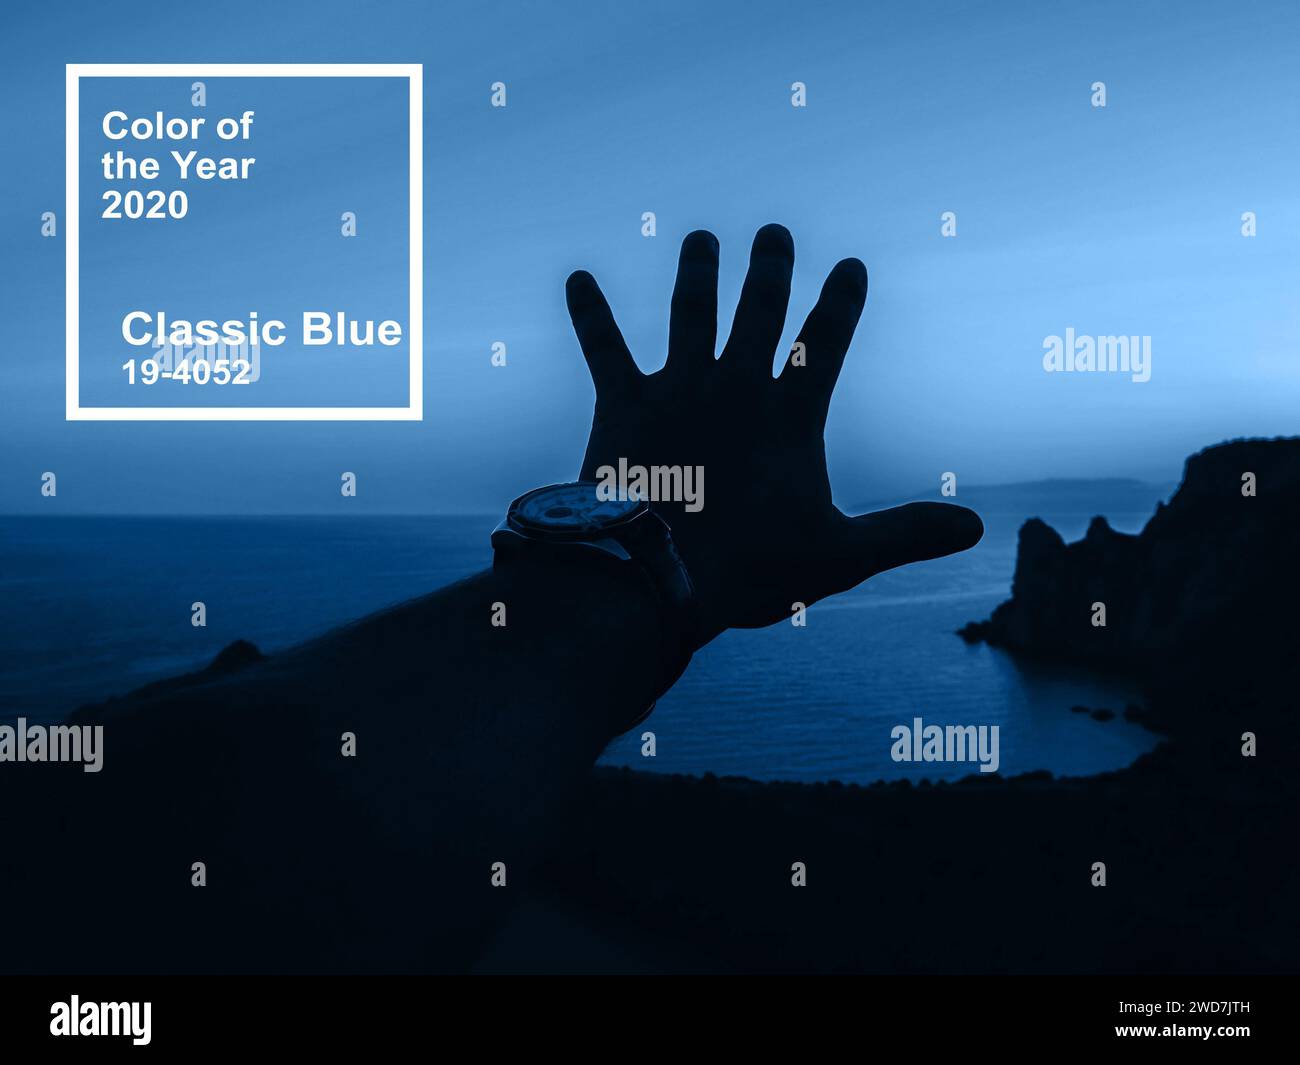 Couleur Bleu classique de l'année 2020. main de l'homme sur le coucher du soleil symbolisant la liberté et l'unité avec la nature Banque D'Images